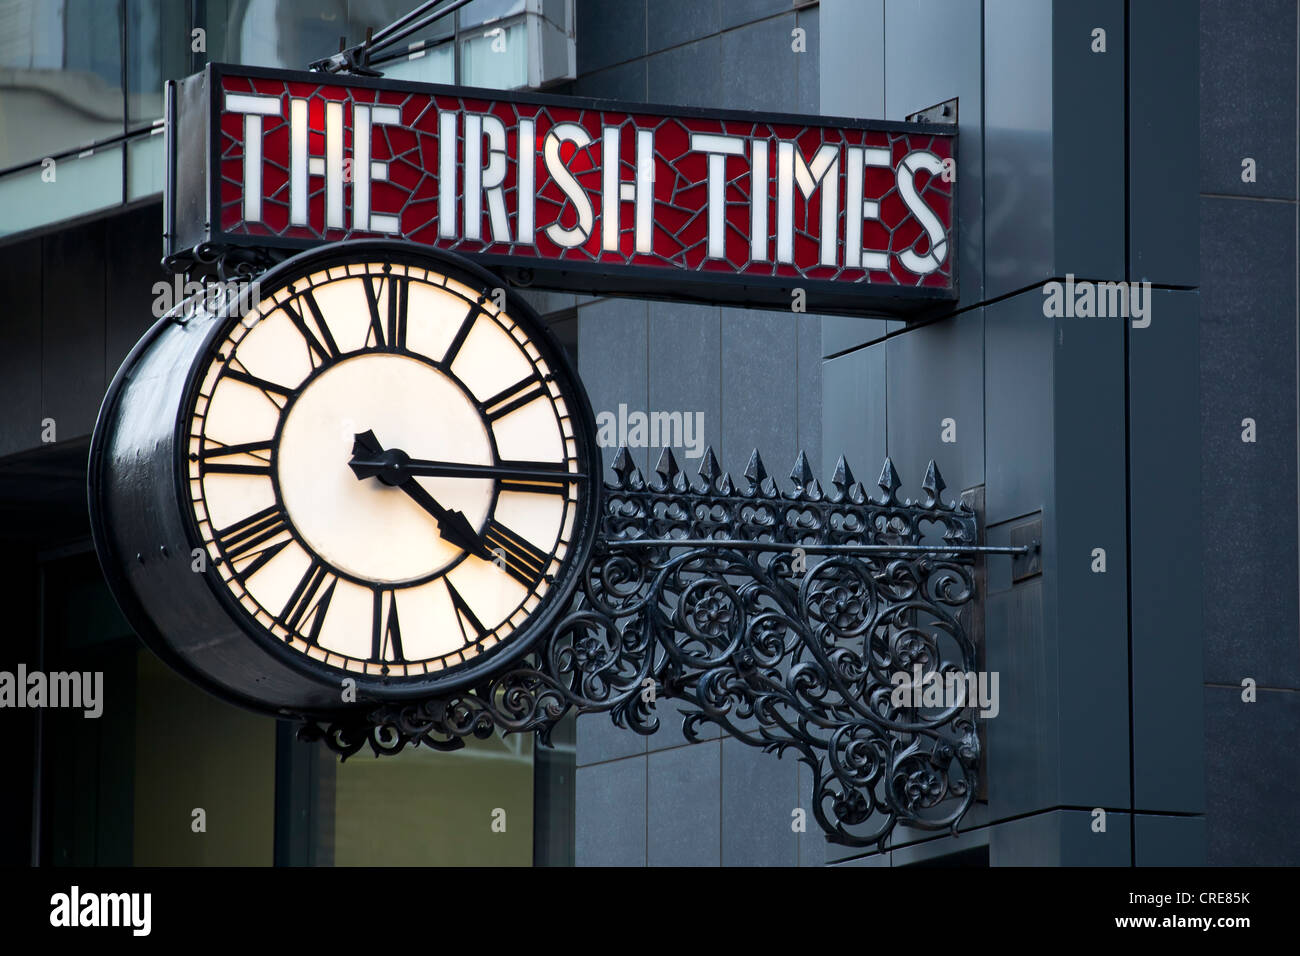 Orologio sulla redazione e amministrazione della media company la Irish Times, Dublino, Irlanda, Europa Foto Stock